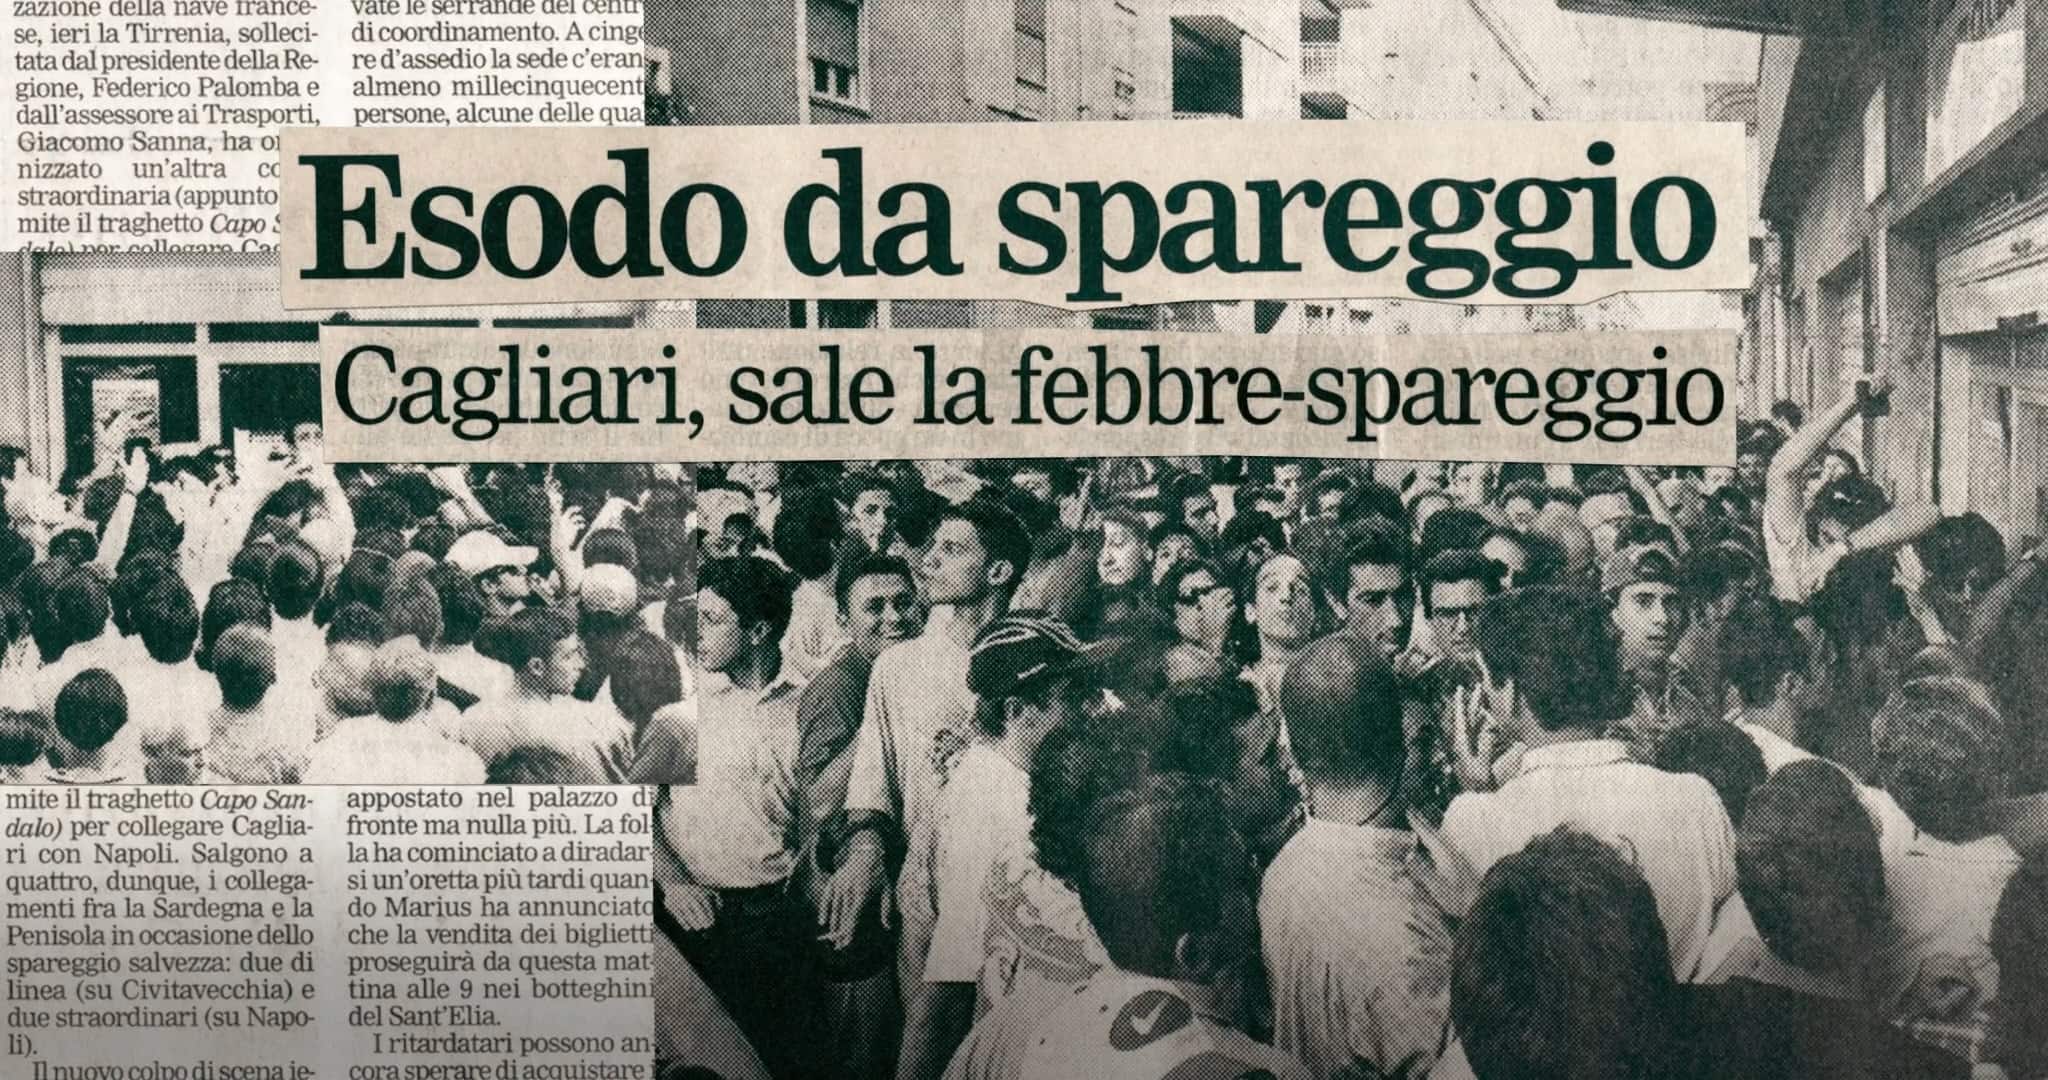 La pagina di un quotidiano locale prima della trasferta a Napoli dei 20 mila tifosi cagliaritani che seguirono lo spareggio contro il Piacenza